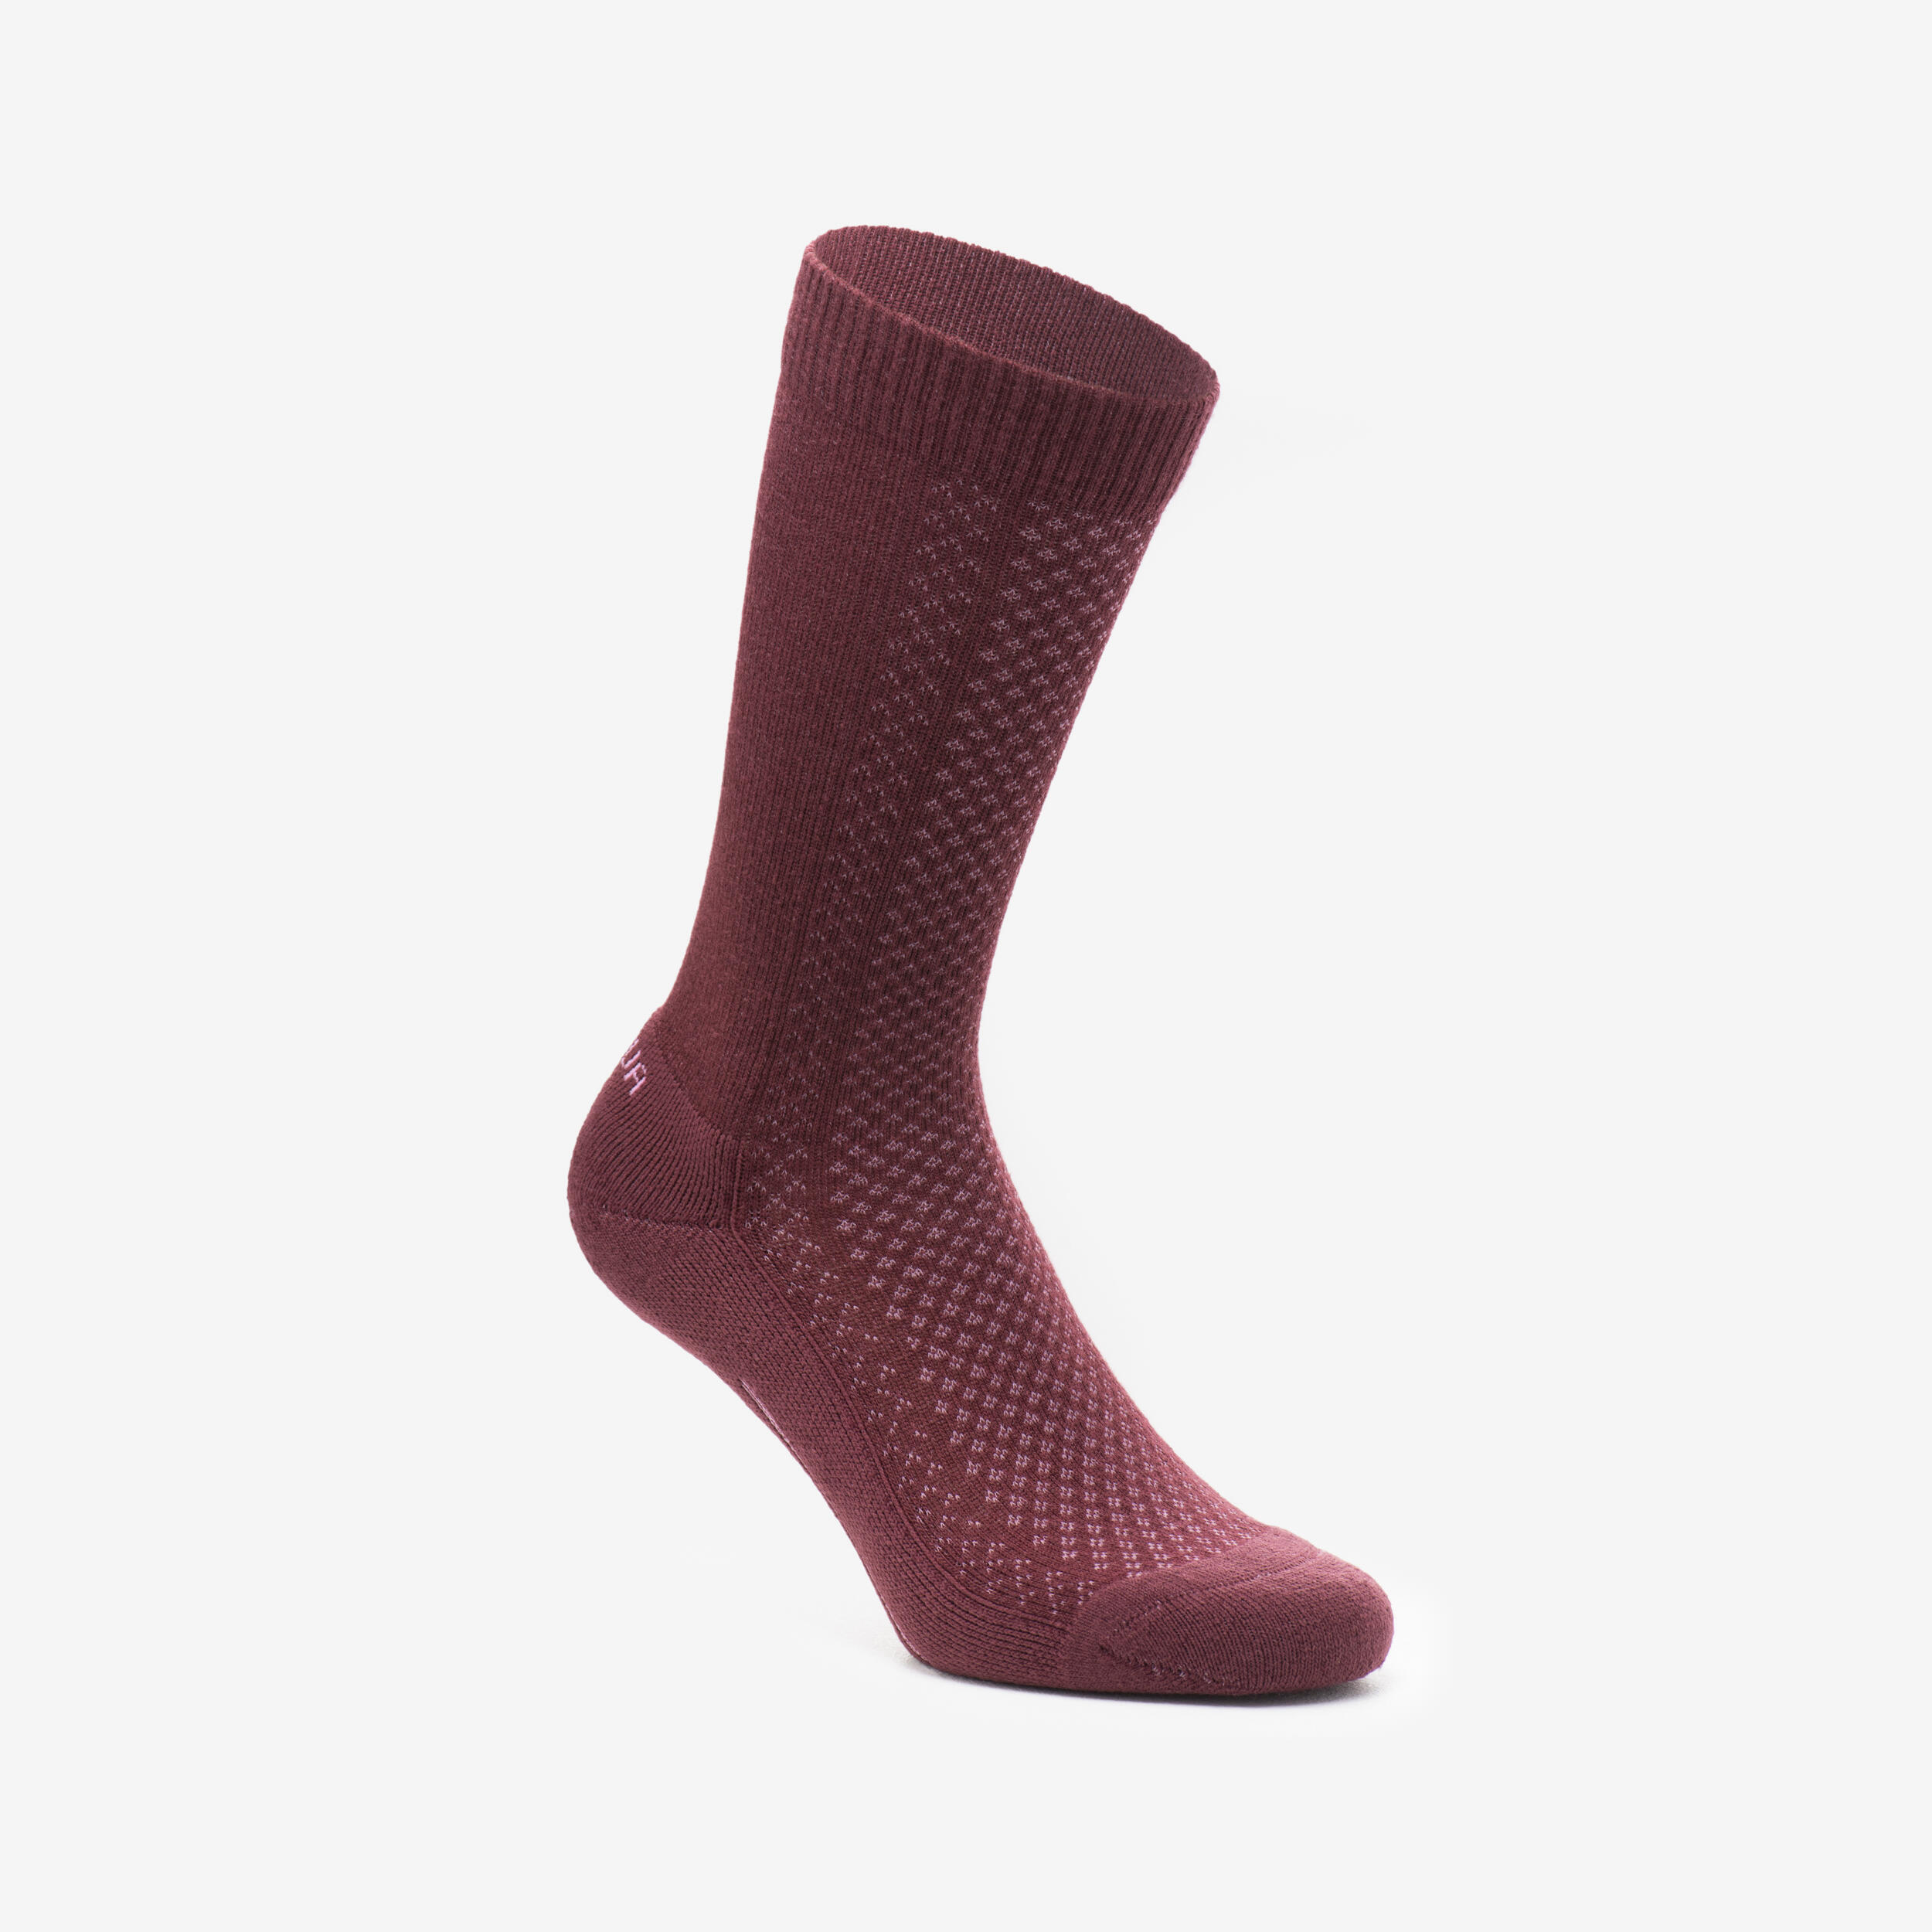 Hike 100 High Socks  - Beige Burgundy-Lyocell& Linen-Pack of 2 pairs 6/11